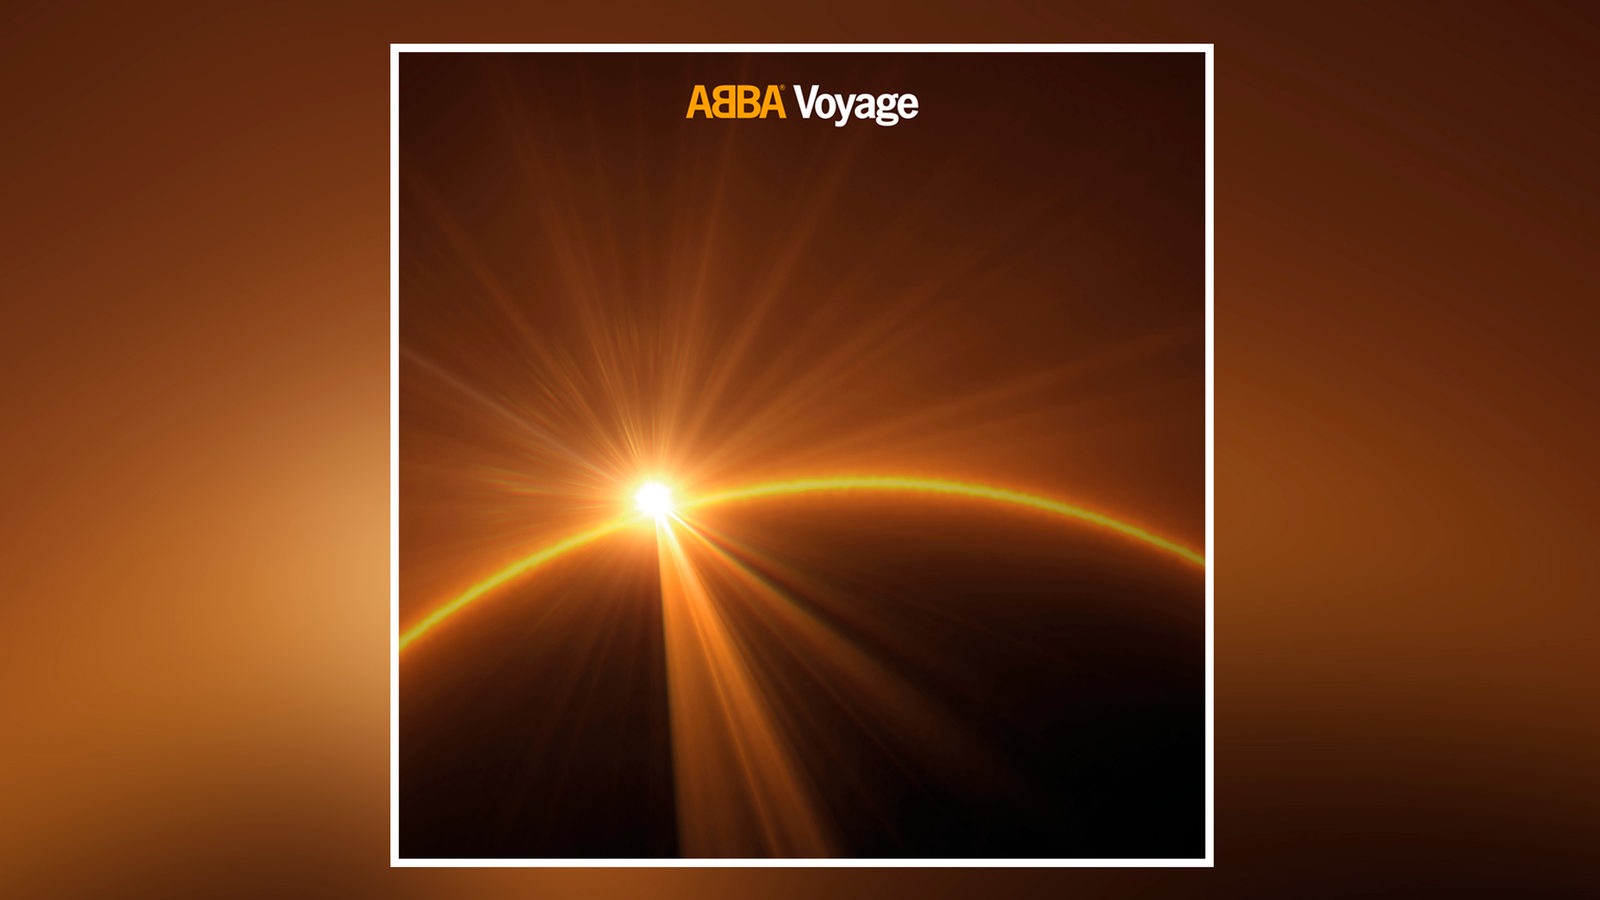 Albumcover von Abba: "Voyage"